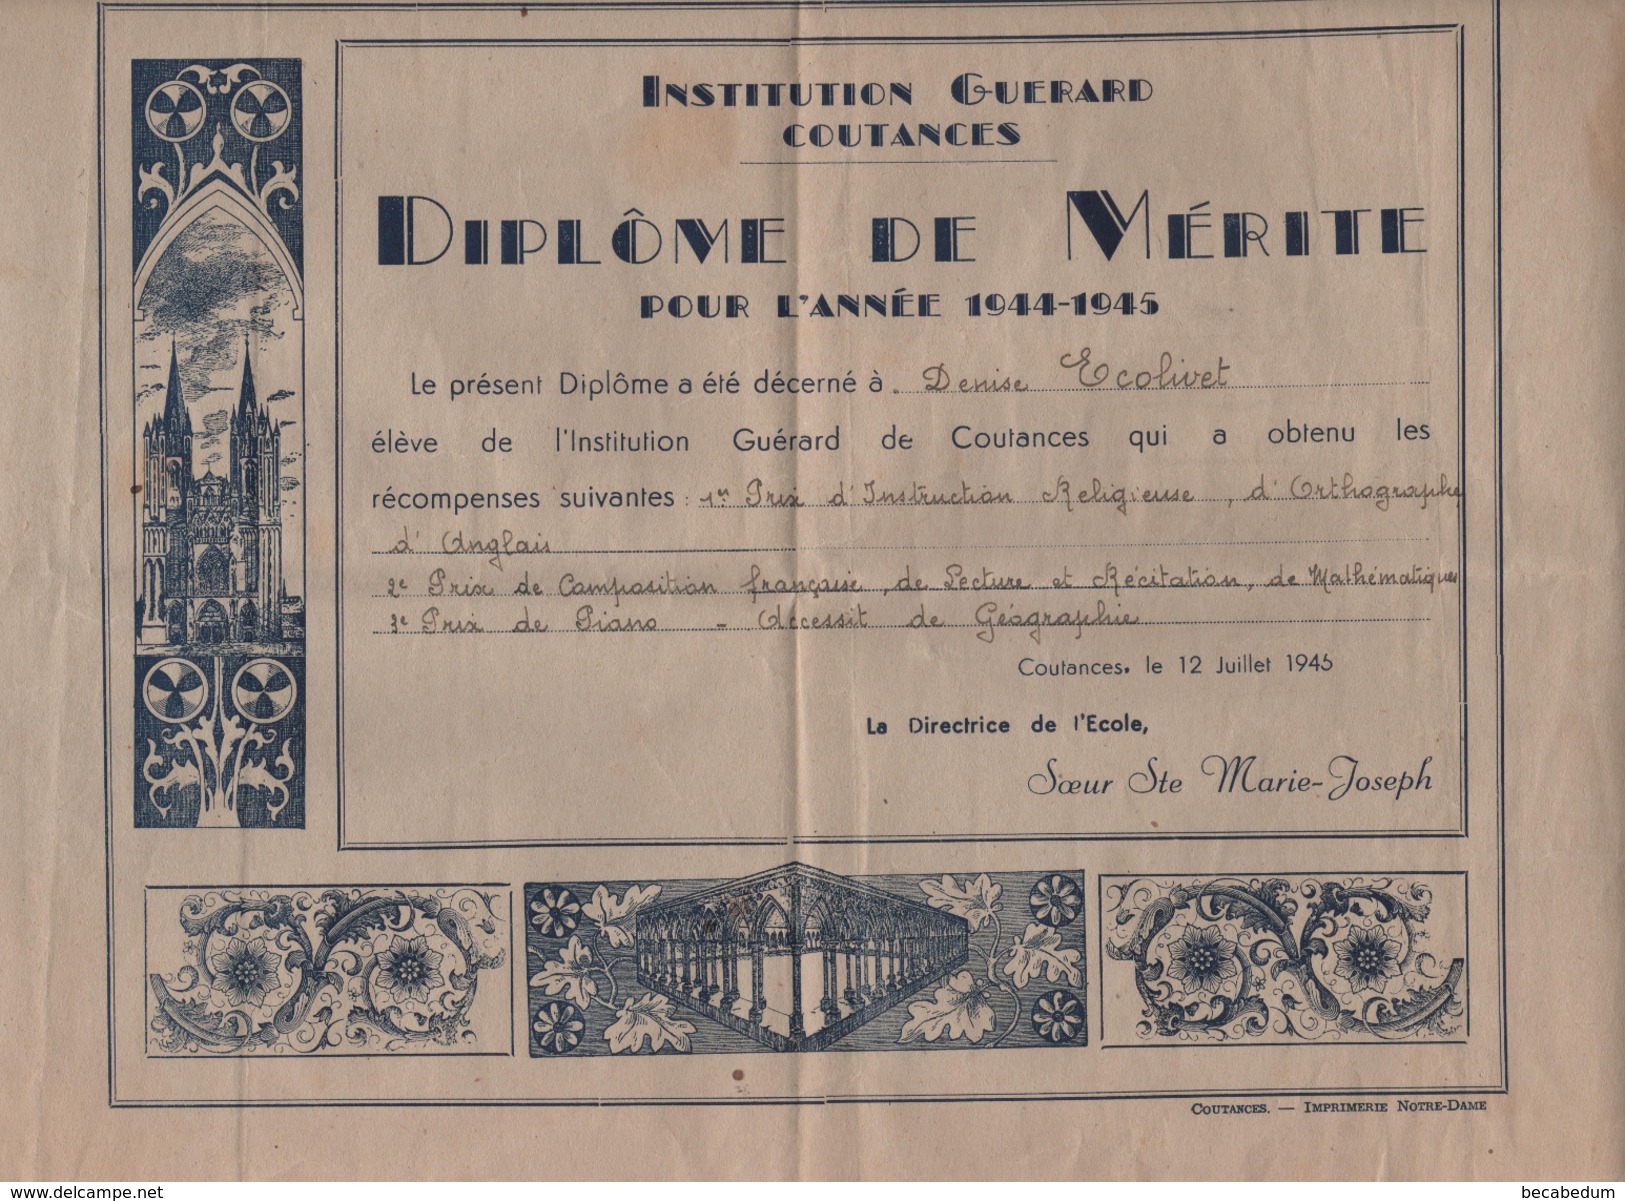 Institution Guérard Coutances Diplôme De Mérite 1944 1945 Soeur Marie Joseph  Ecolivet - Diplômes & Bulletins Scolaires